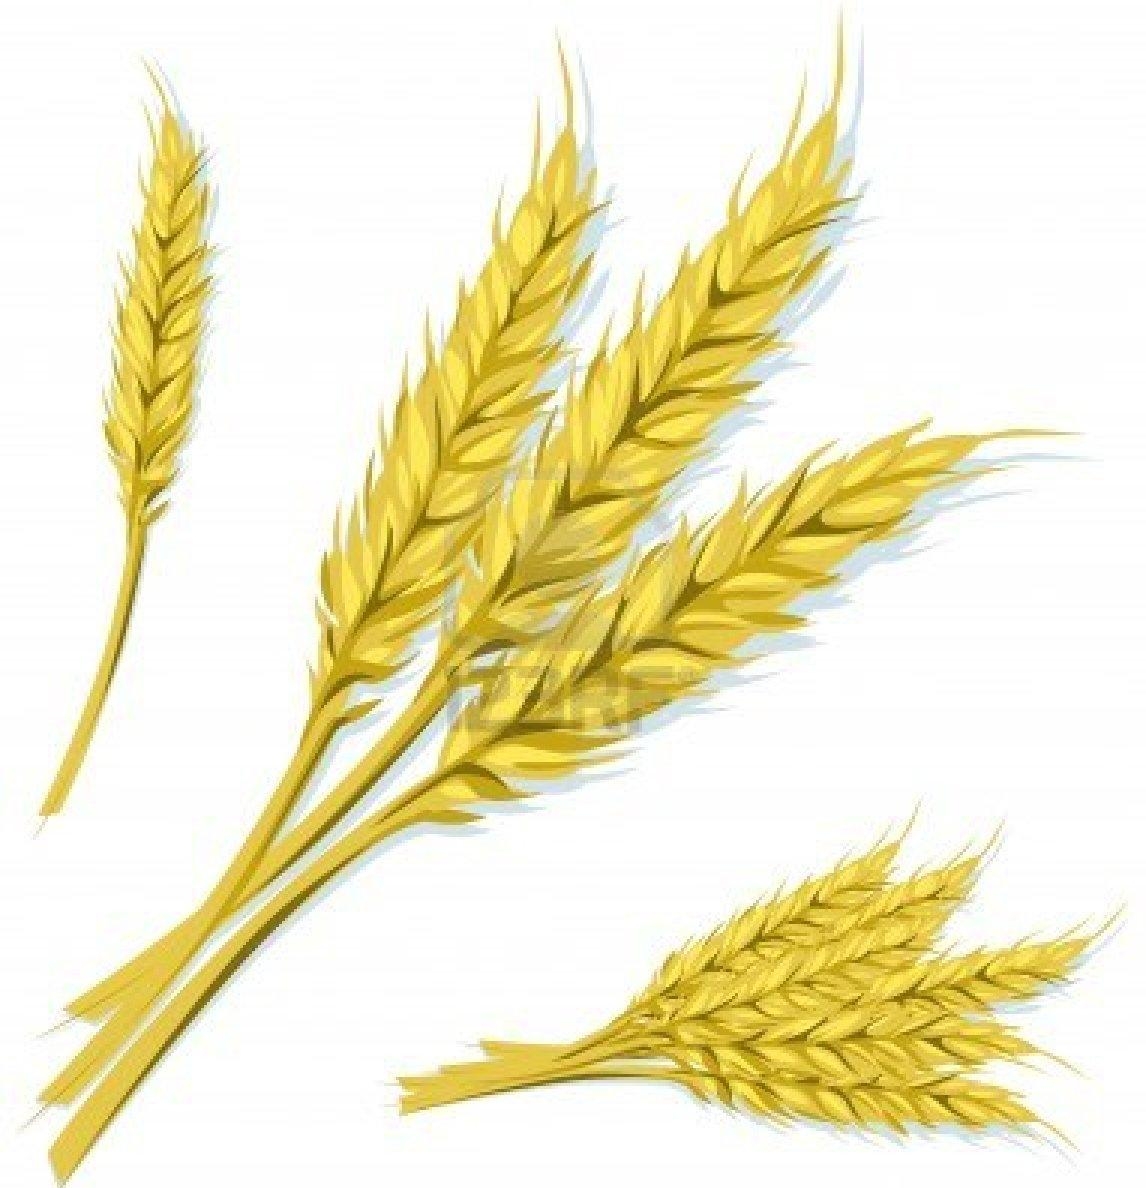 структура пшеницы твёрдой